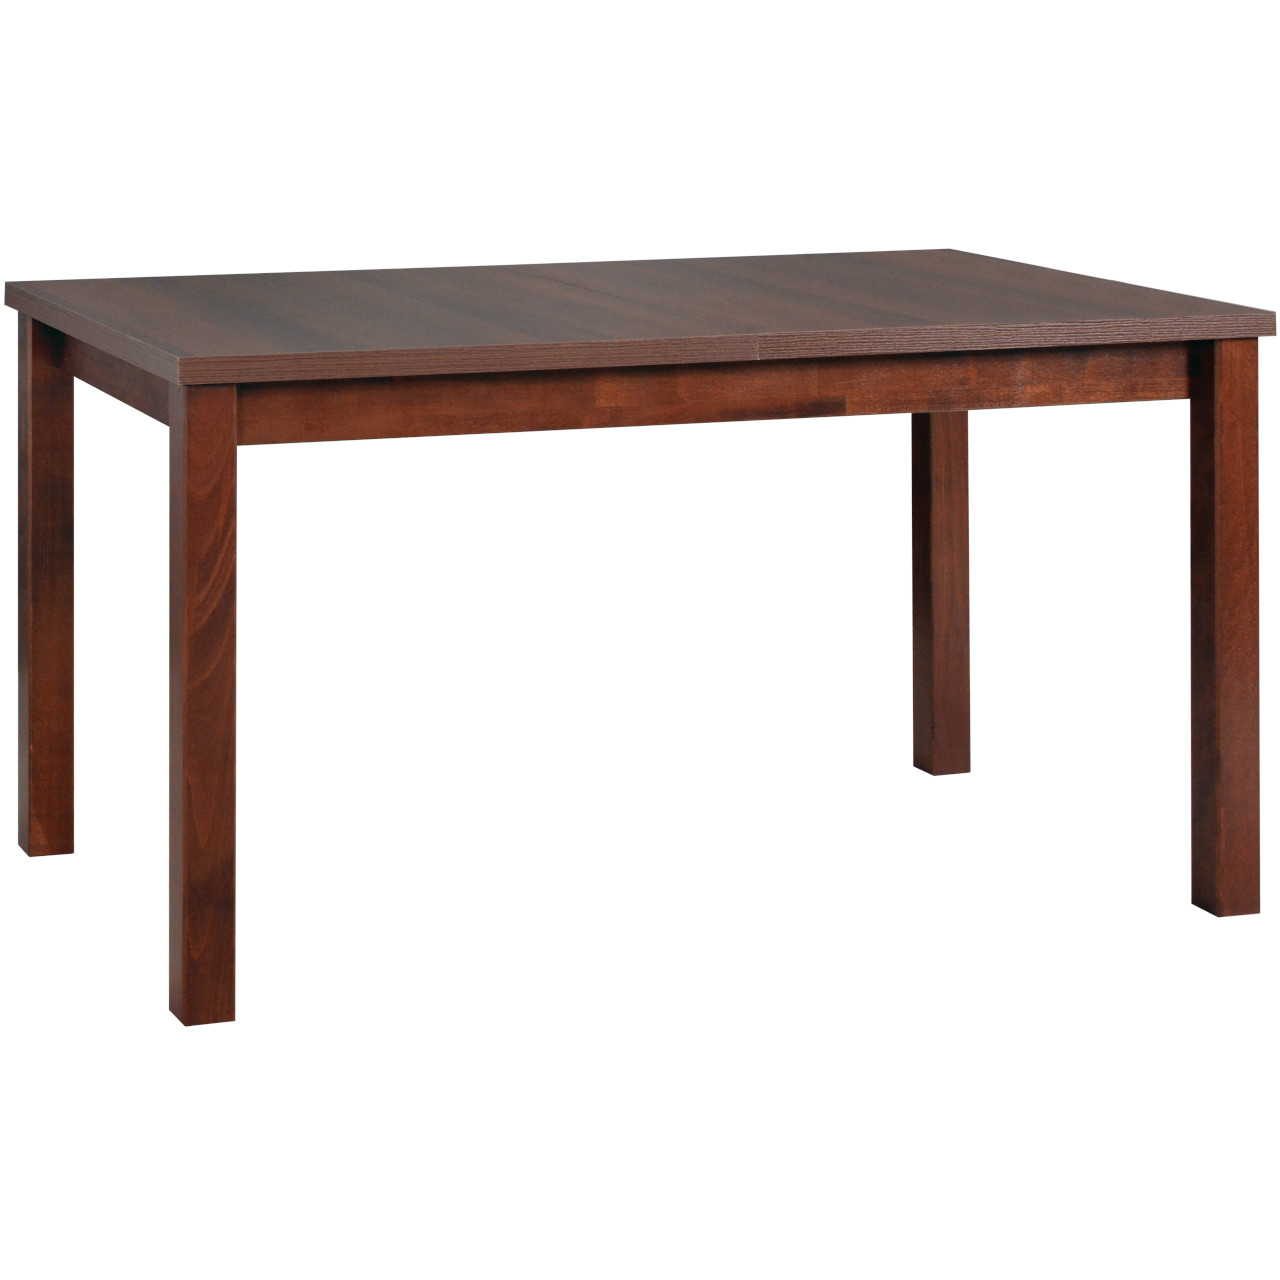 Table MODENA 1 80x140/180 walnut laminate